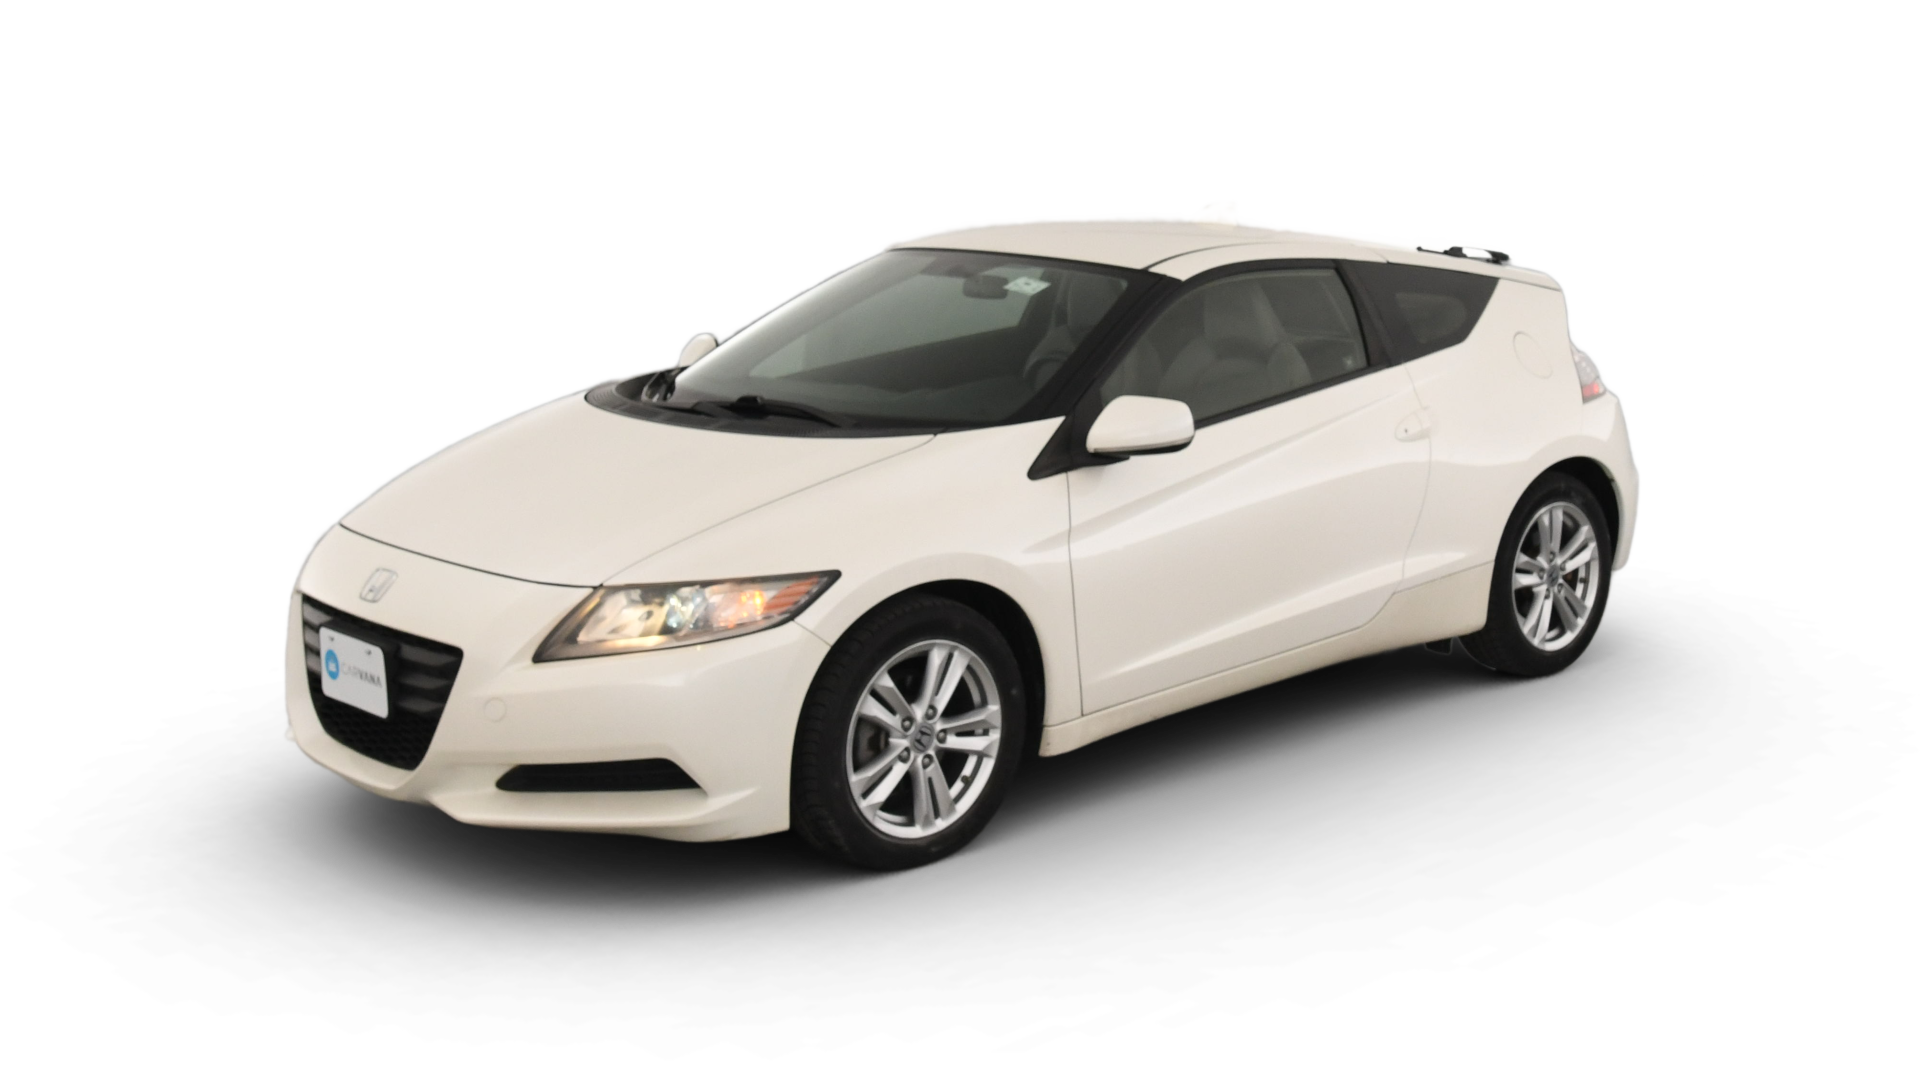 Honda CR-Z model image.